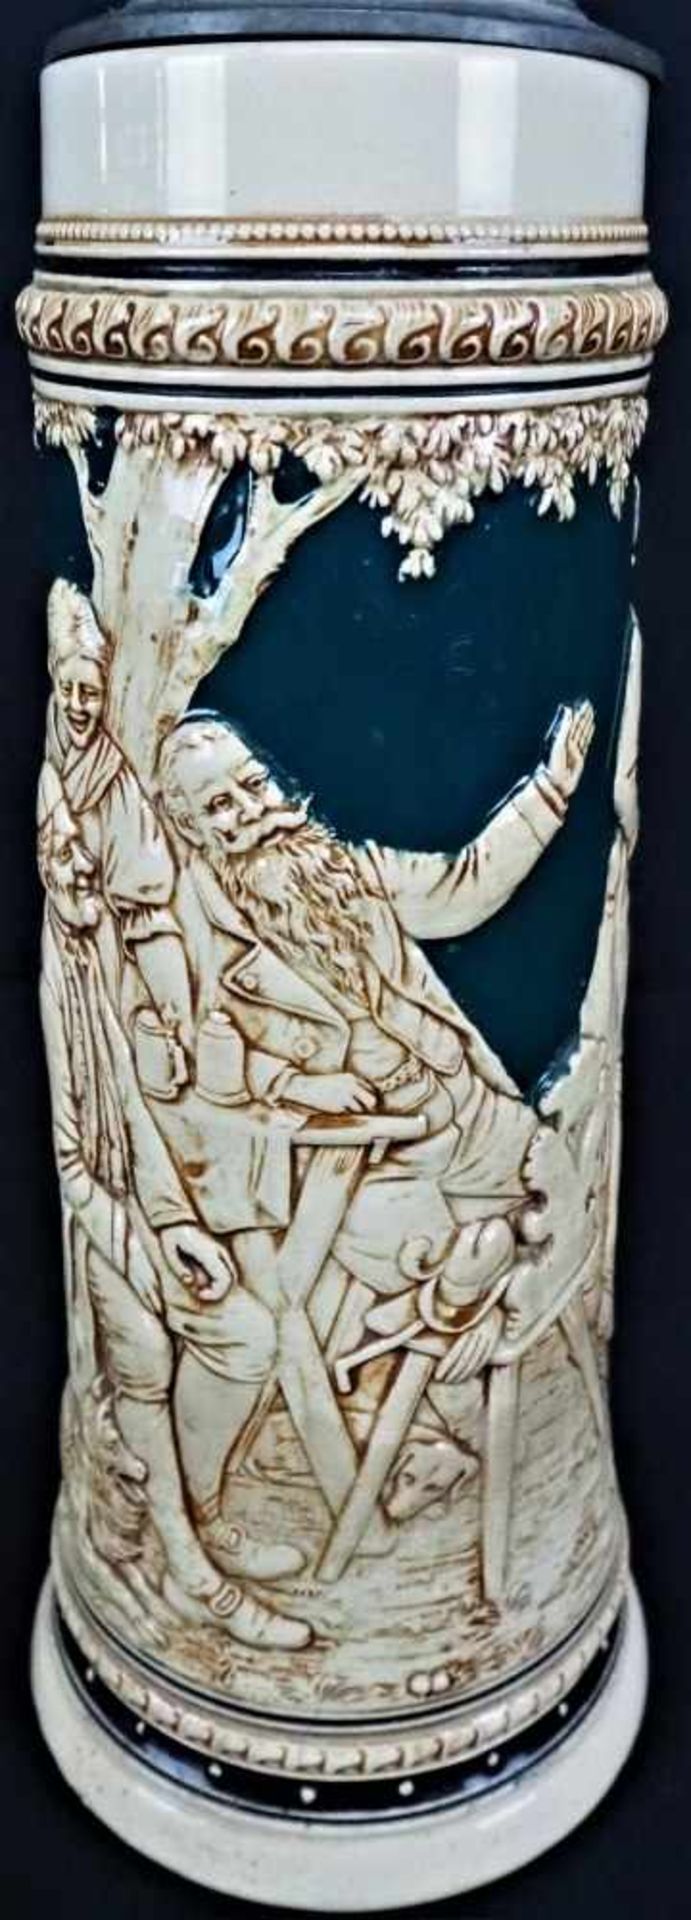 Großer 2L Bierkrug aus Keramik mit Deckelglasiert und bemalt mit Zinndeckel, Aufschrift "Gut Holz" - Bild 2 aus 4